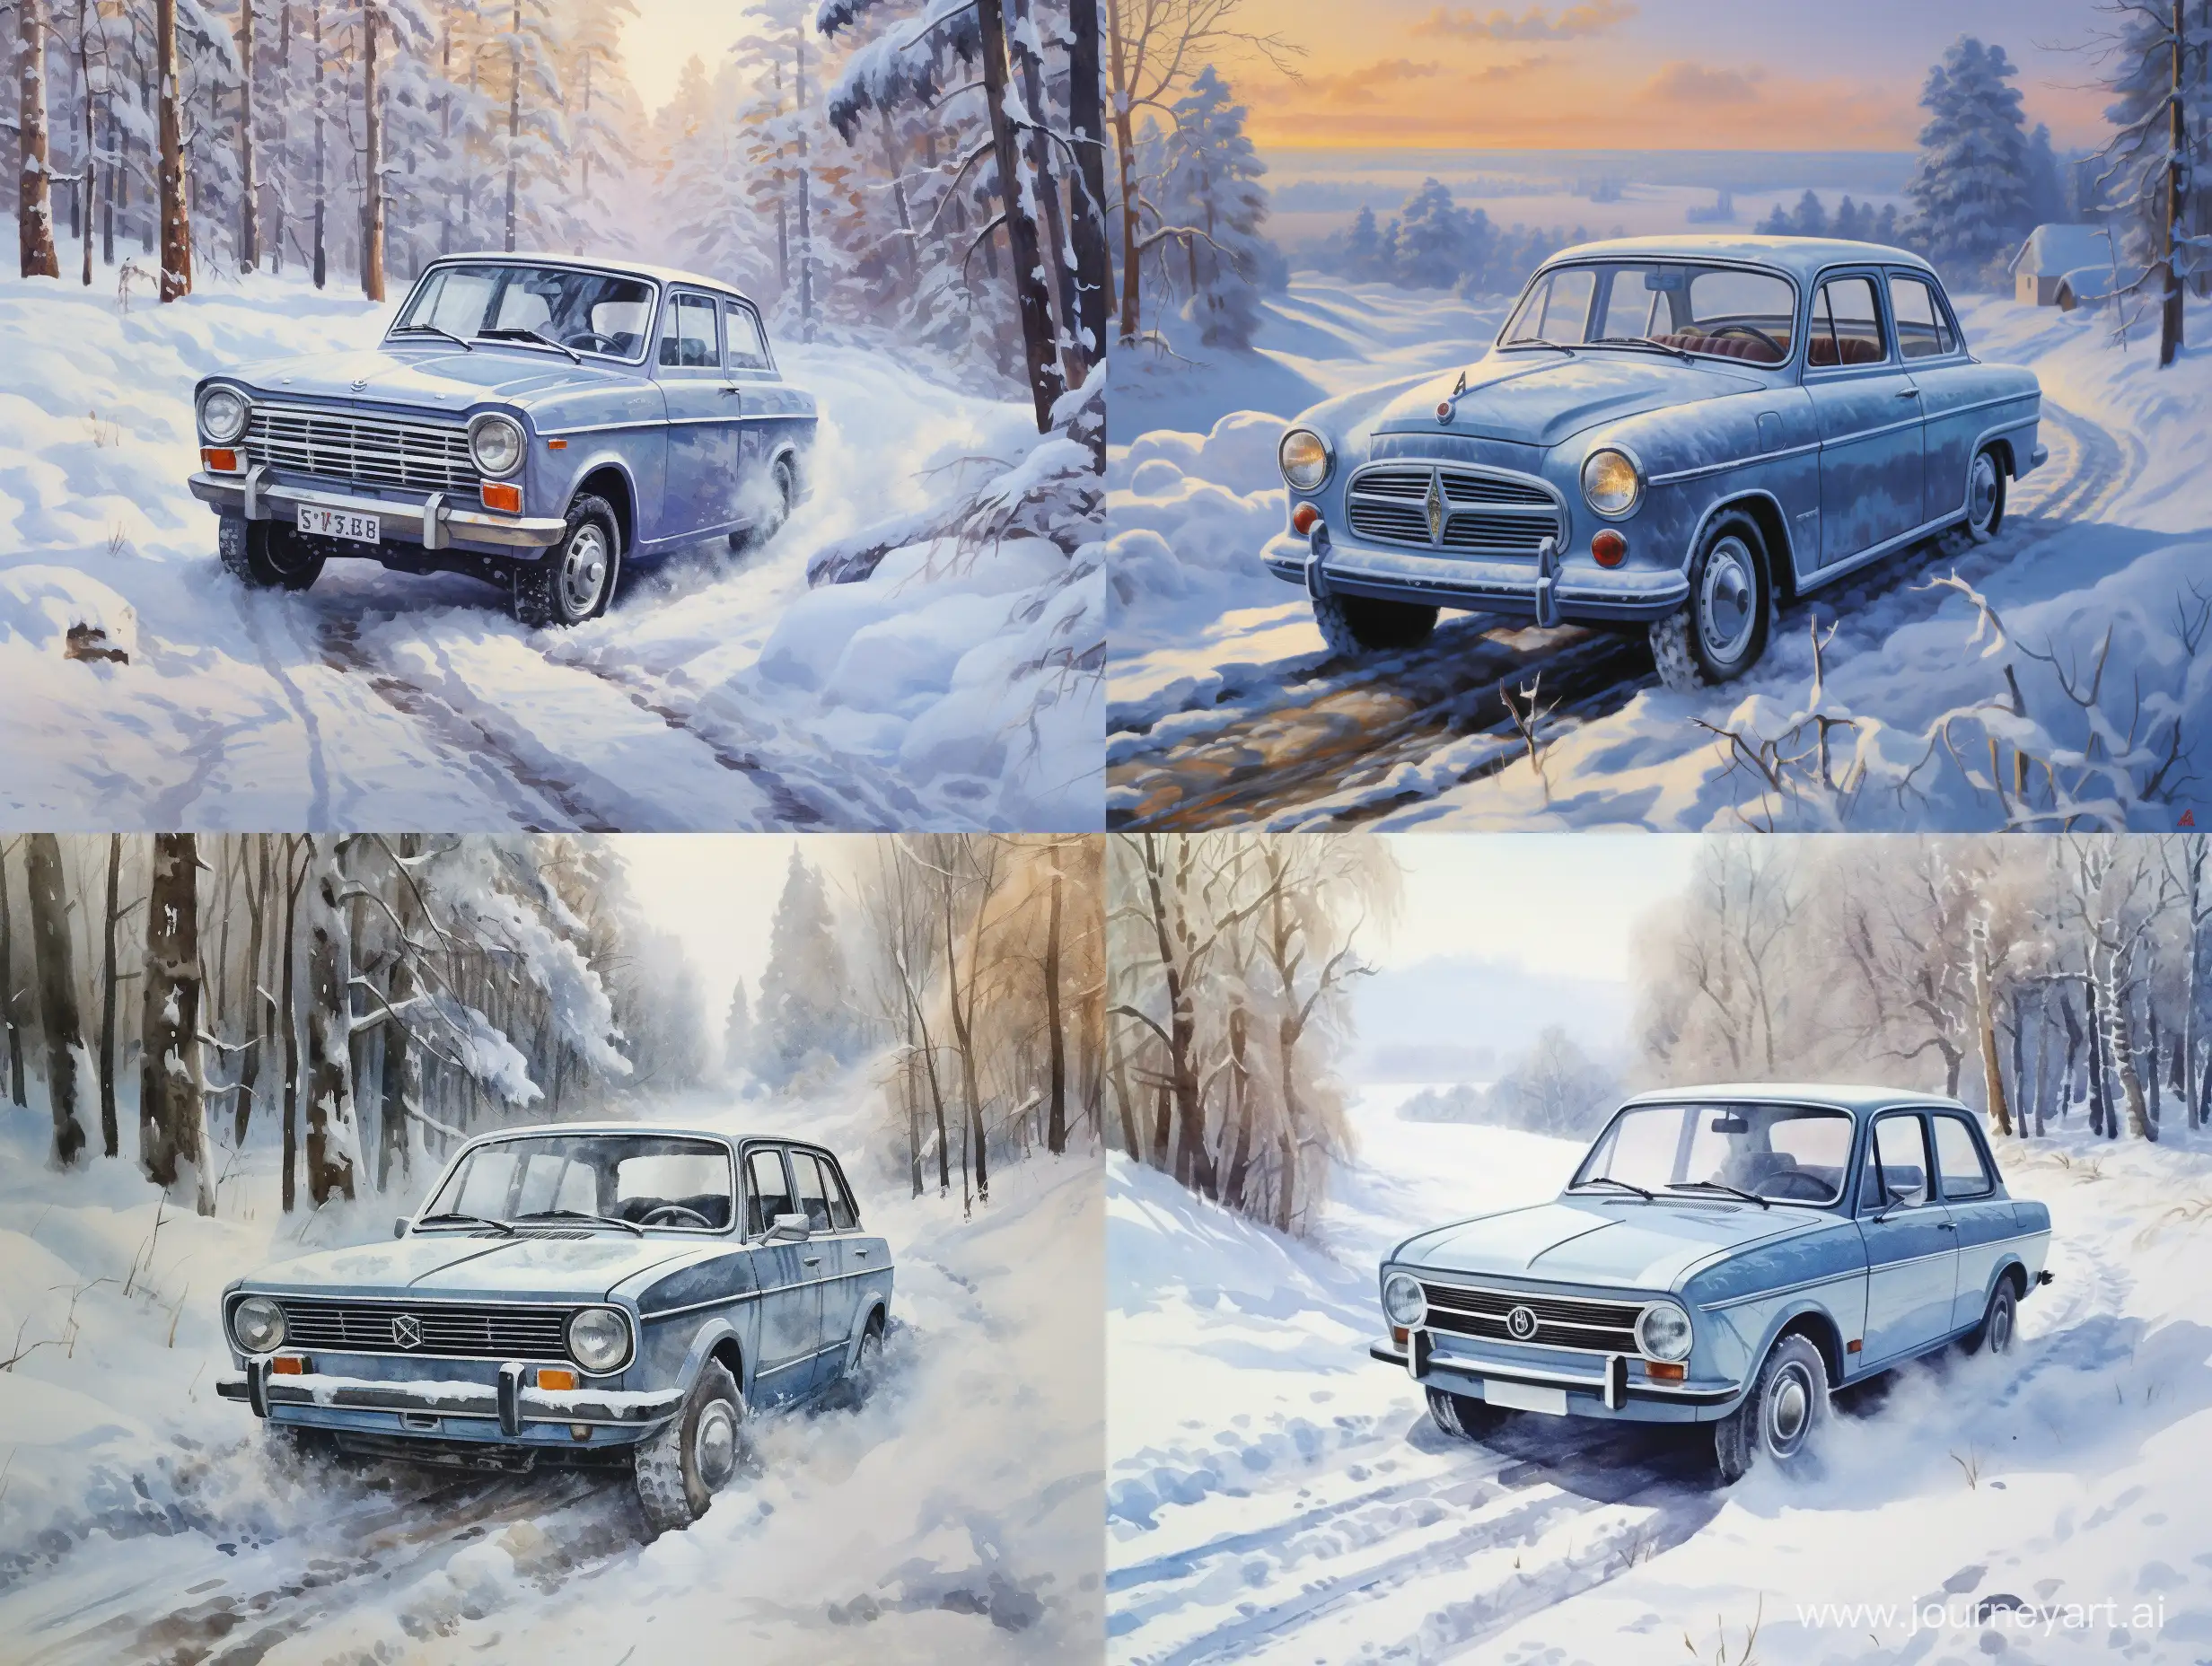 GrayBlue-Lada-Granta-Driving-on-Snow-Classic-Car-Winter-Scene